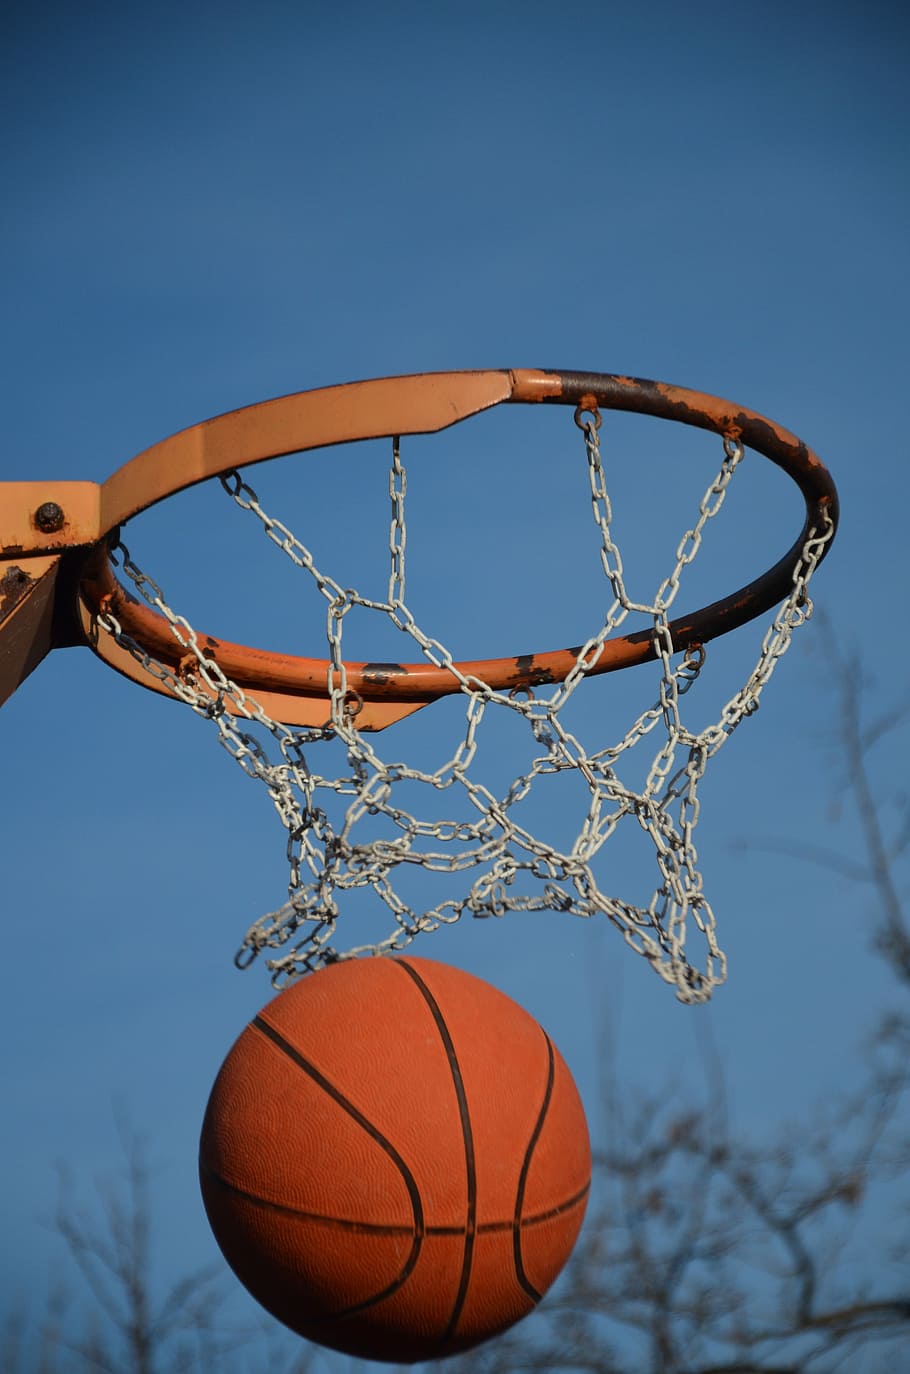 Basket, Bola, Olahraga, Permainan, kompetisi, bermain, peralatan, keranjang, waktu luang, aktivitas